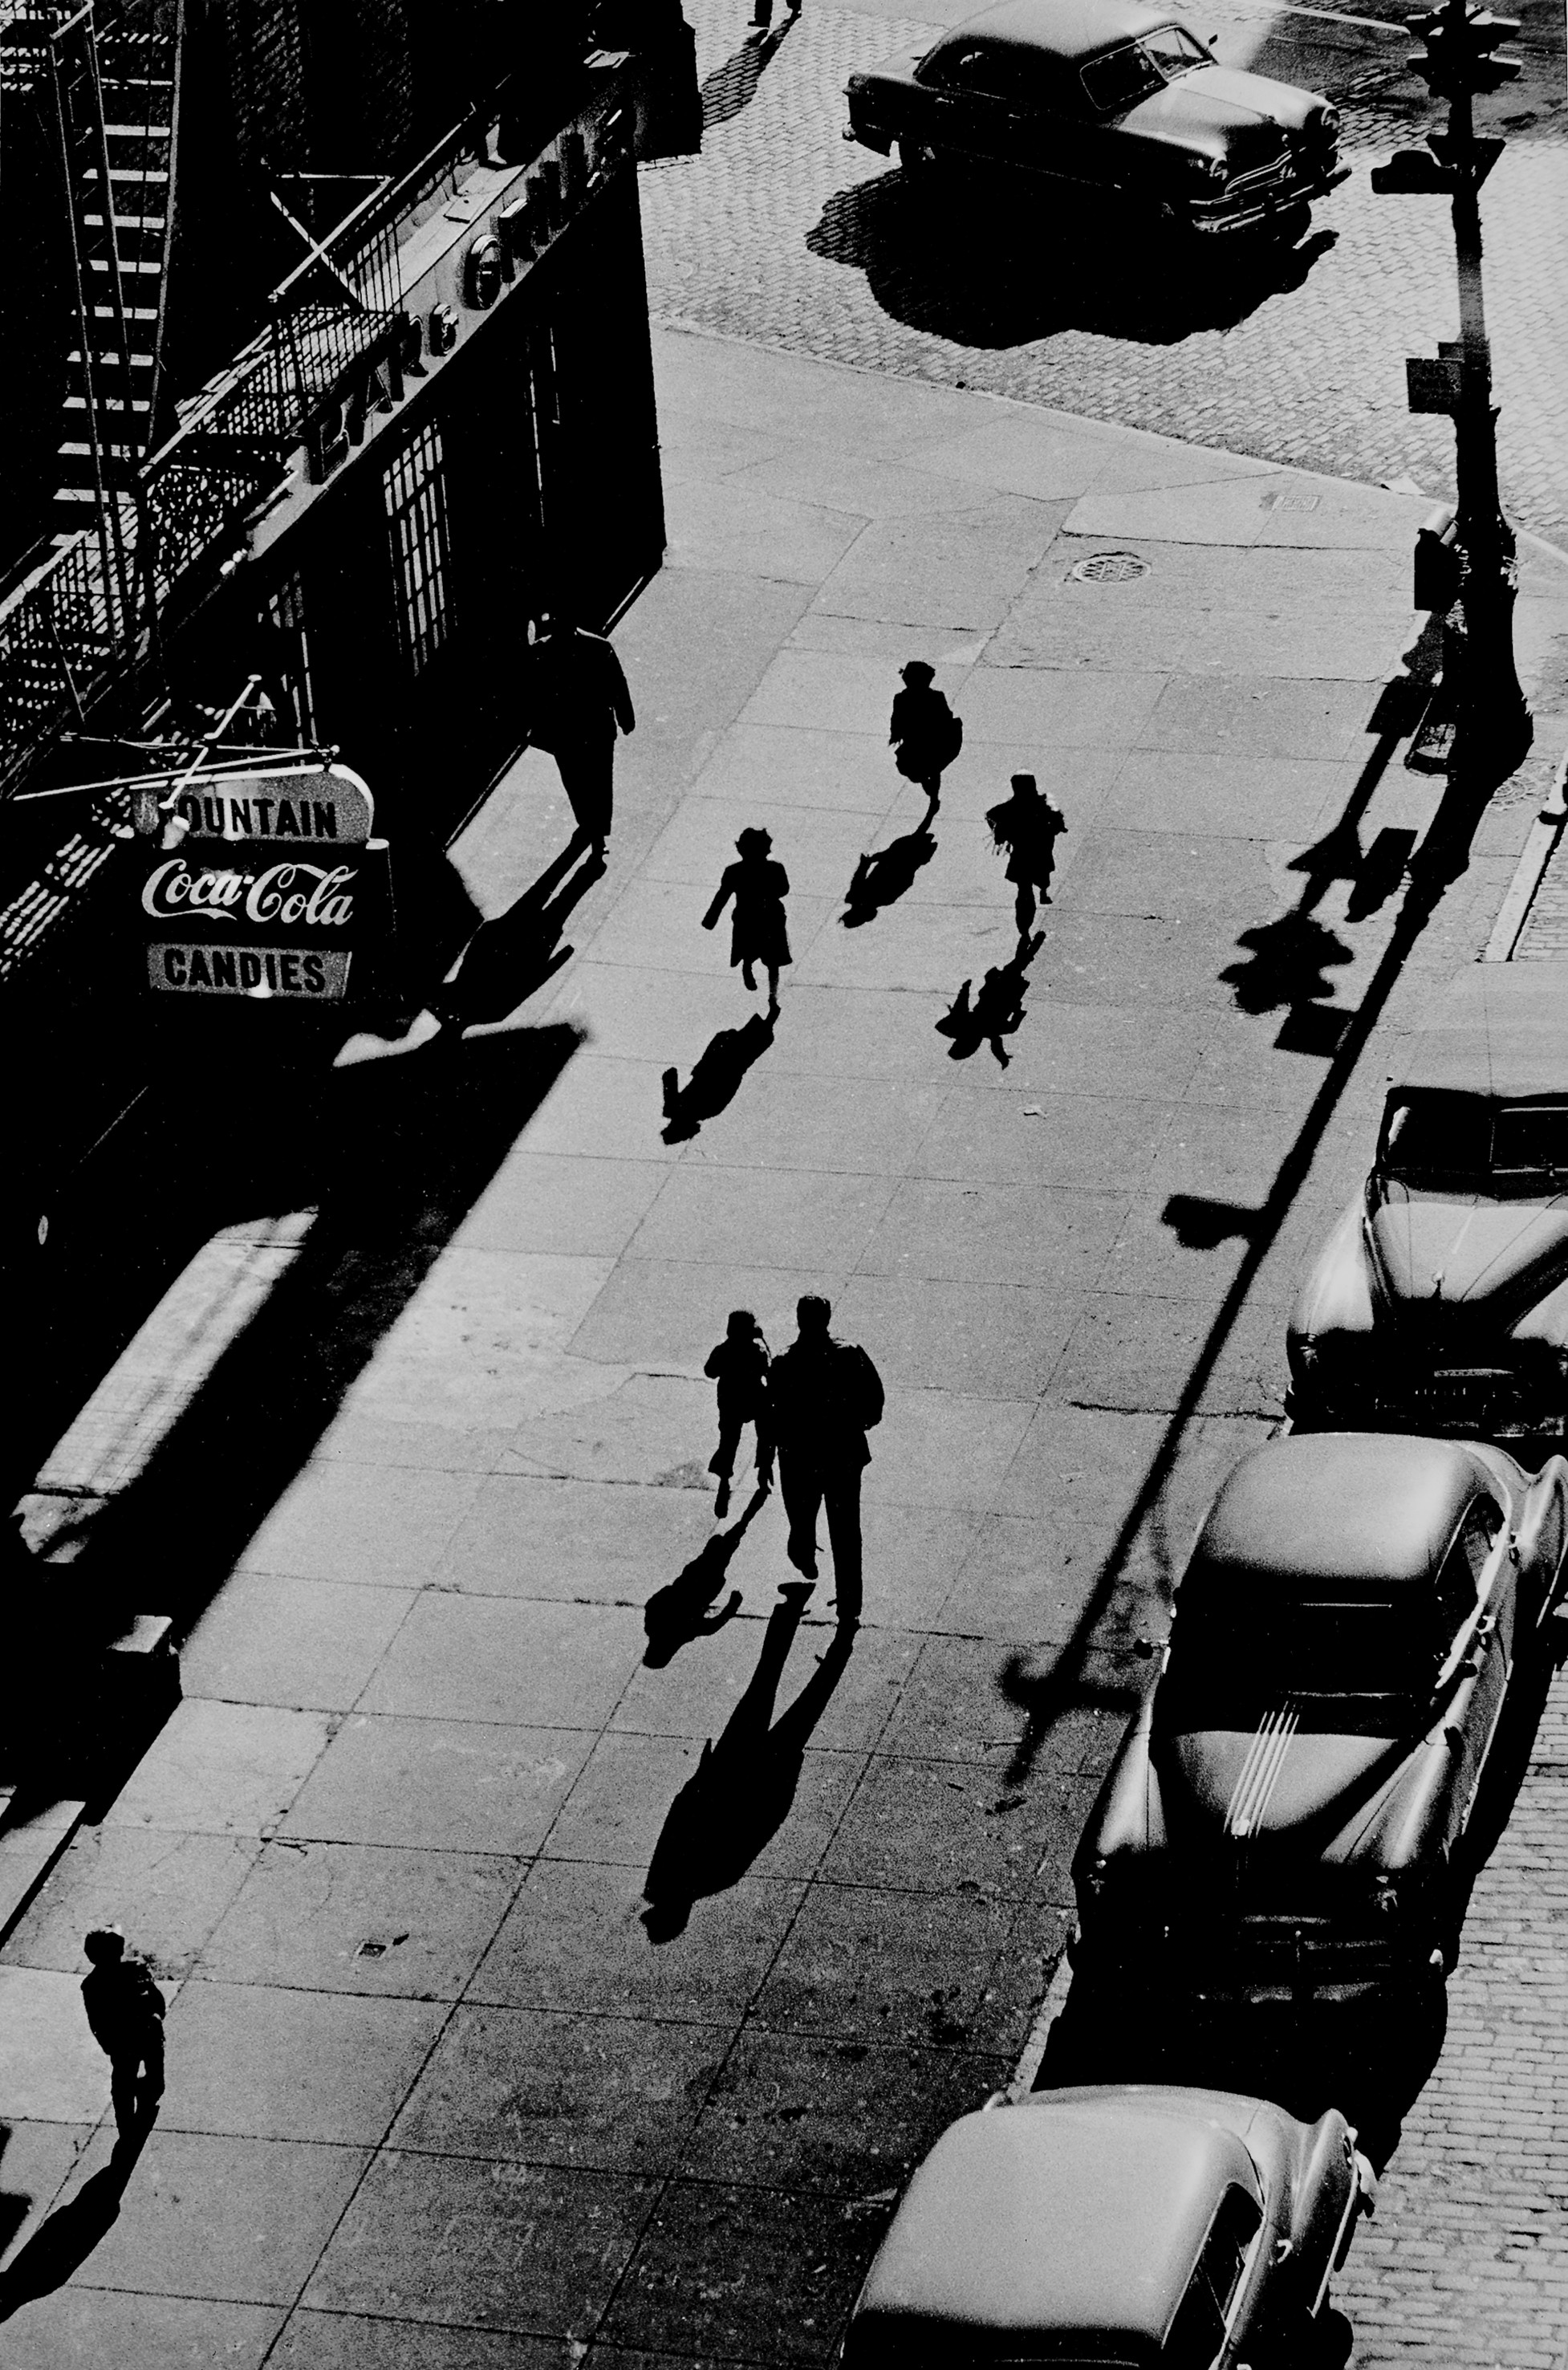 125-я улица от эстакады, 1950. Фотограф Гарольд Файнштейн 